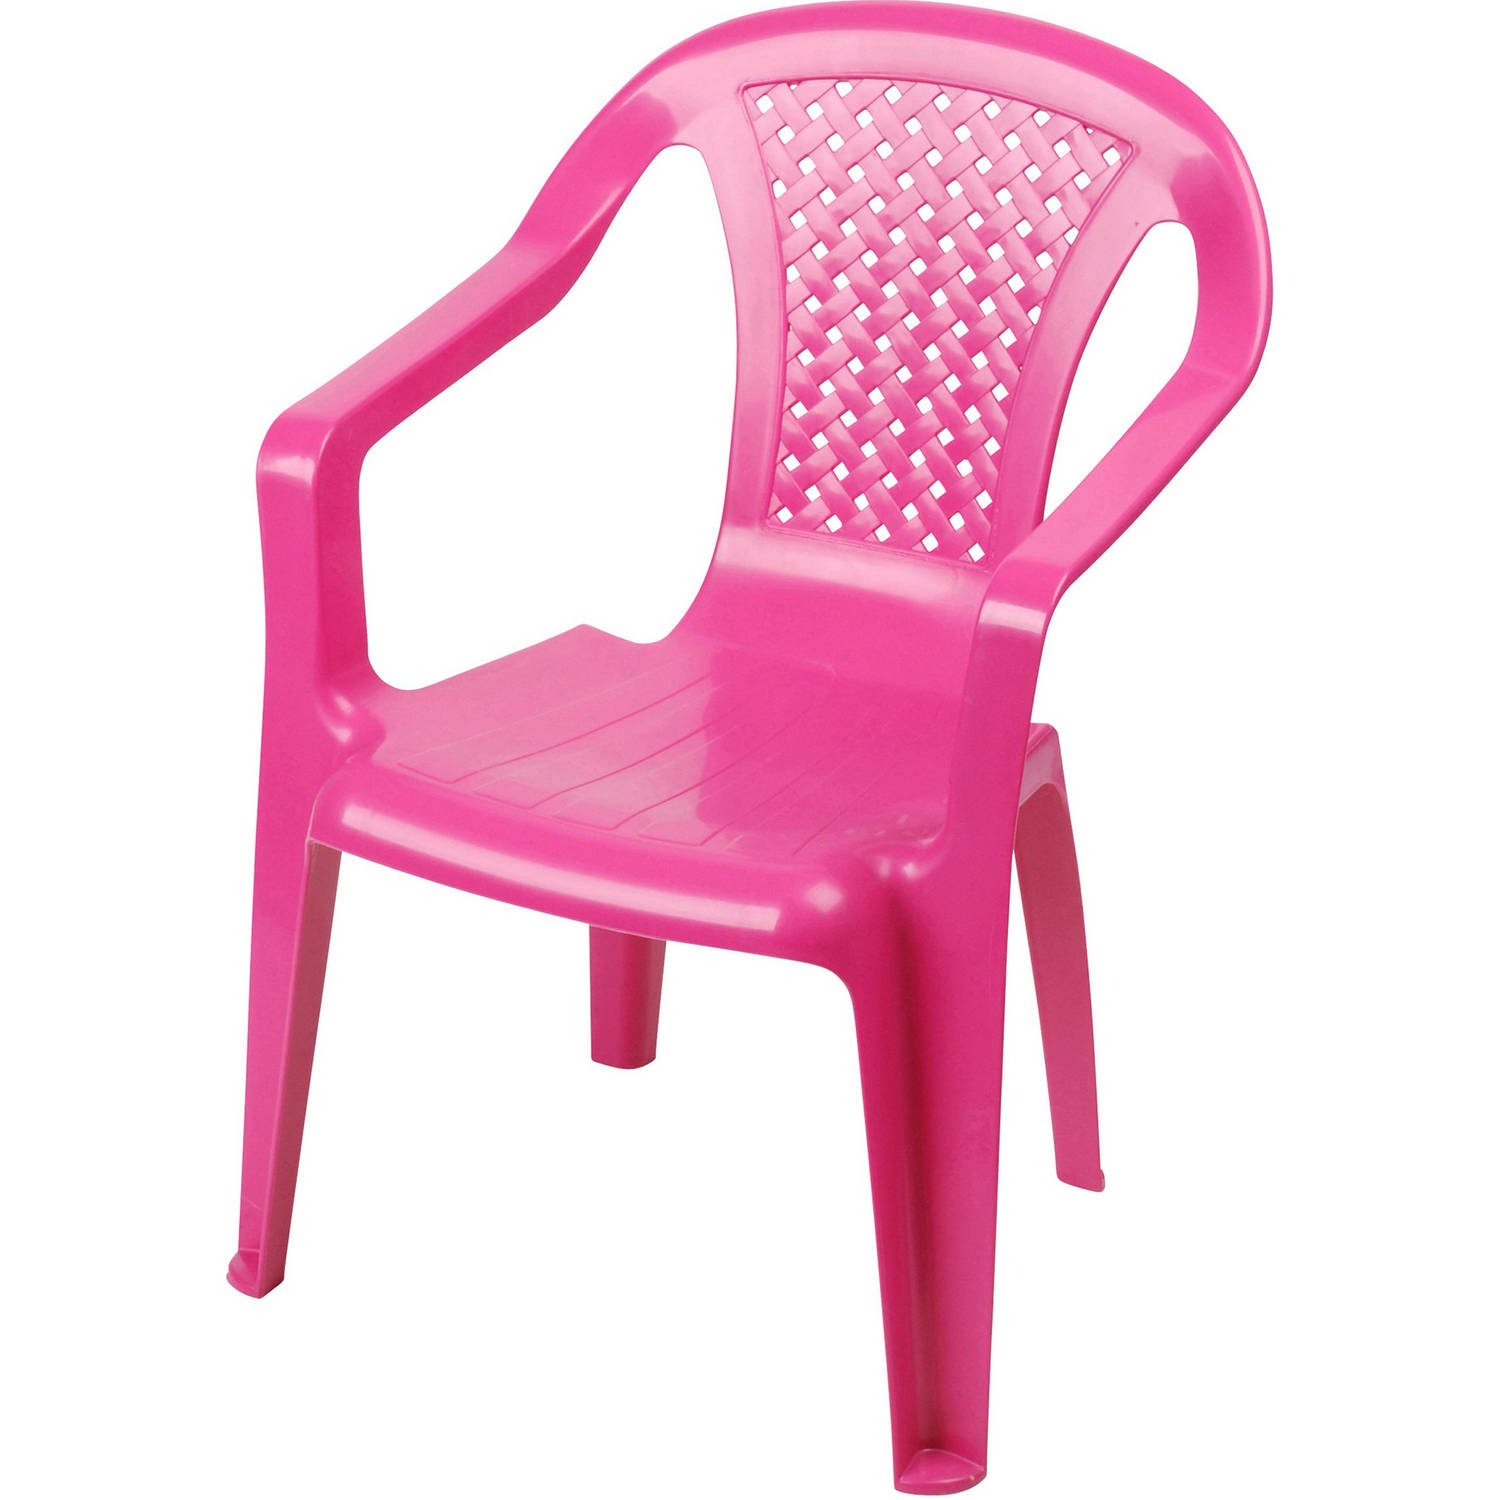 Sunnydays Kinderstoel - roze - kunststof - buiten/binnen - L37 x B35 x H52 cm - tuinstoelen